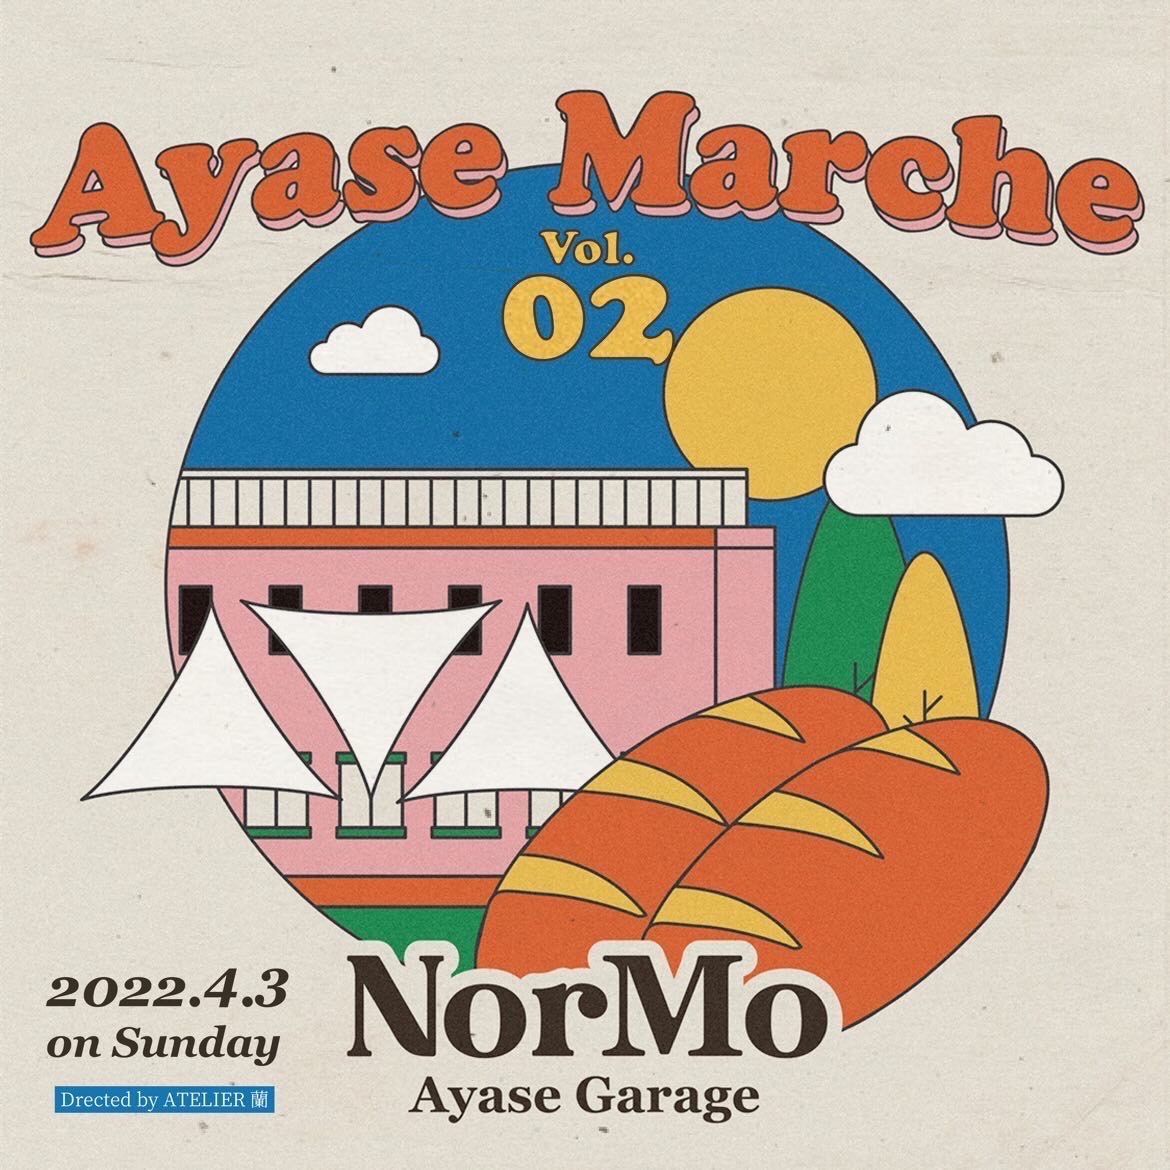 Ayase Marche Vol.02 in NorMo Ayase Garage